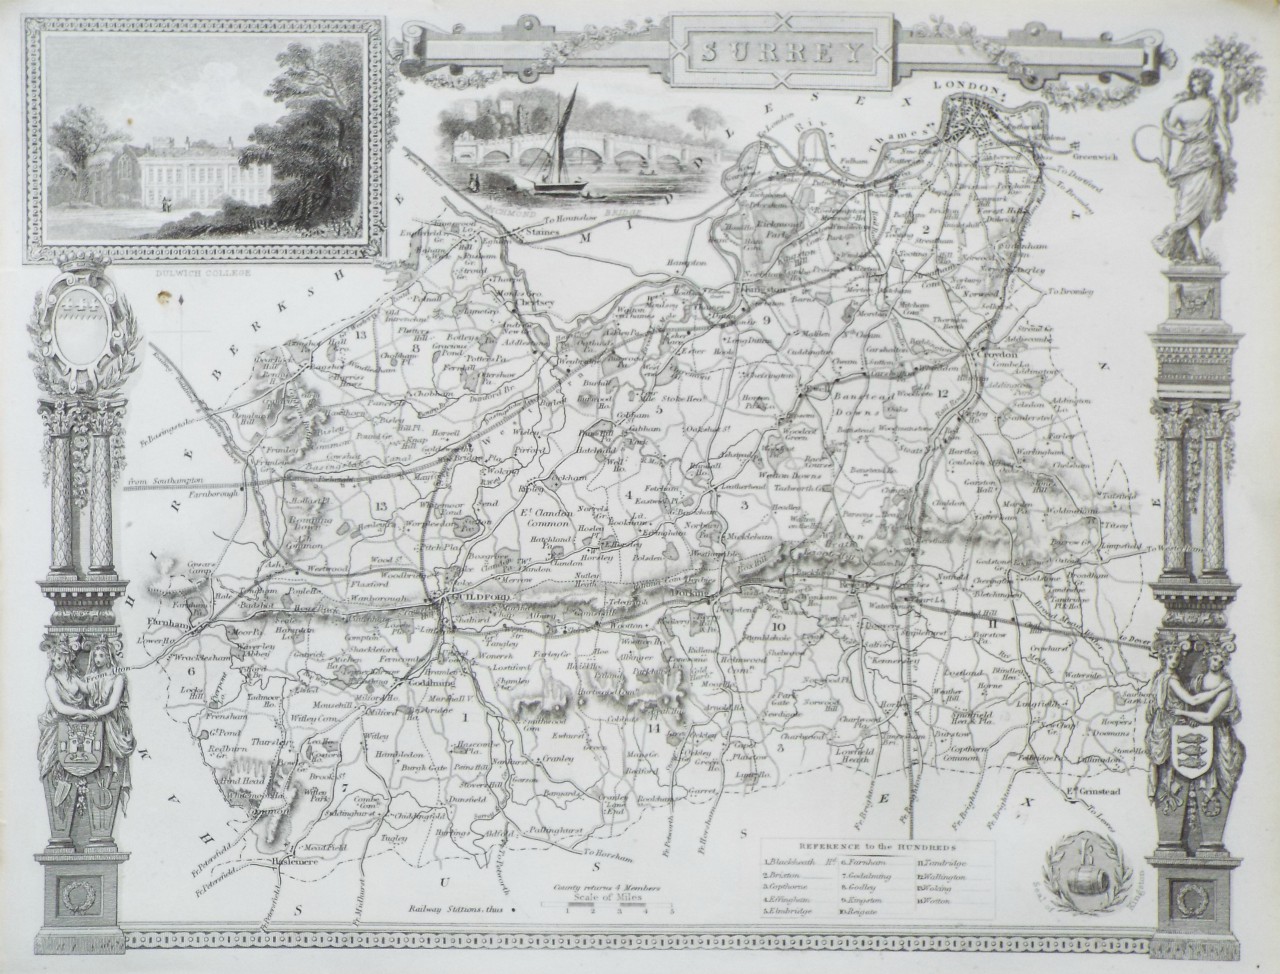 Map of Surrey - Moule